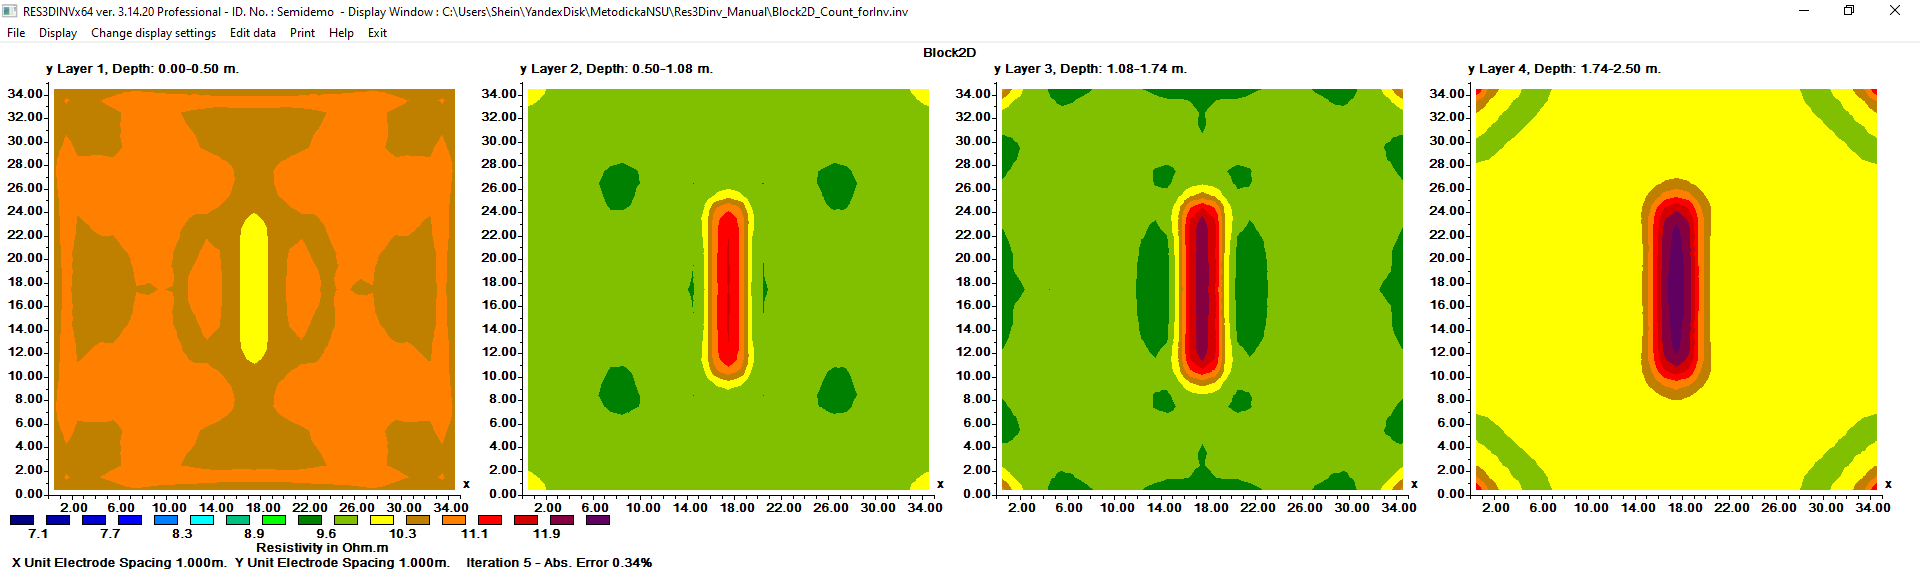 Рис. 50. Отображение результатов инверсии в программе Res3DInv: горизонтальные срезы – плоскость XY